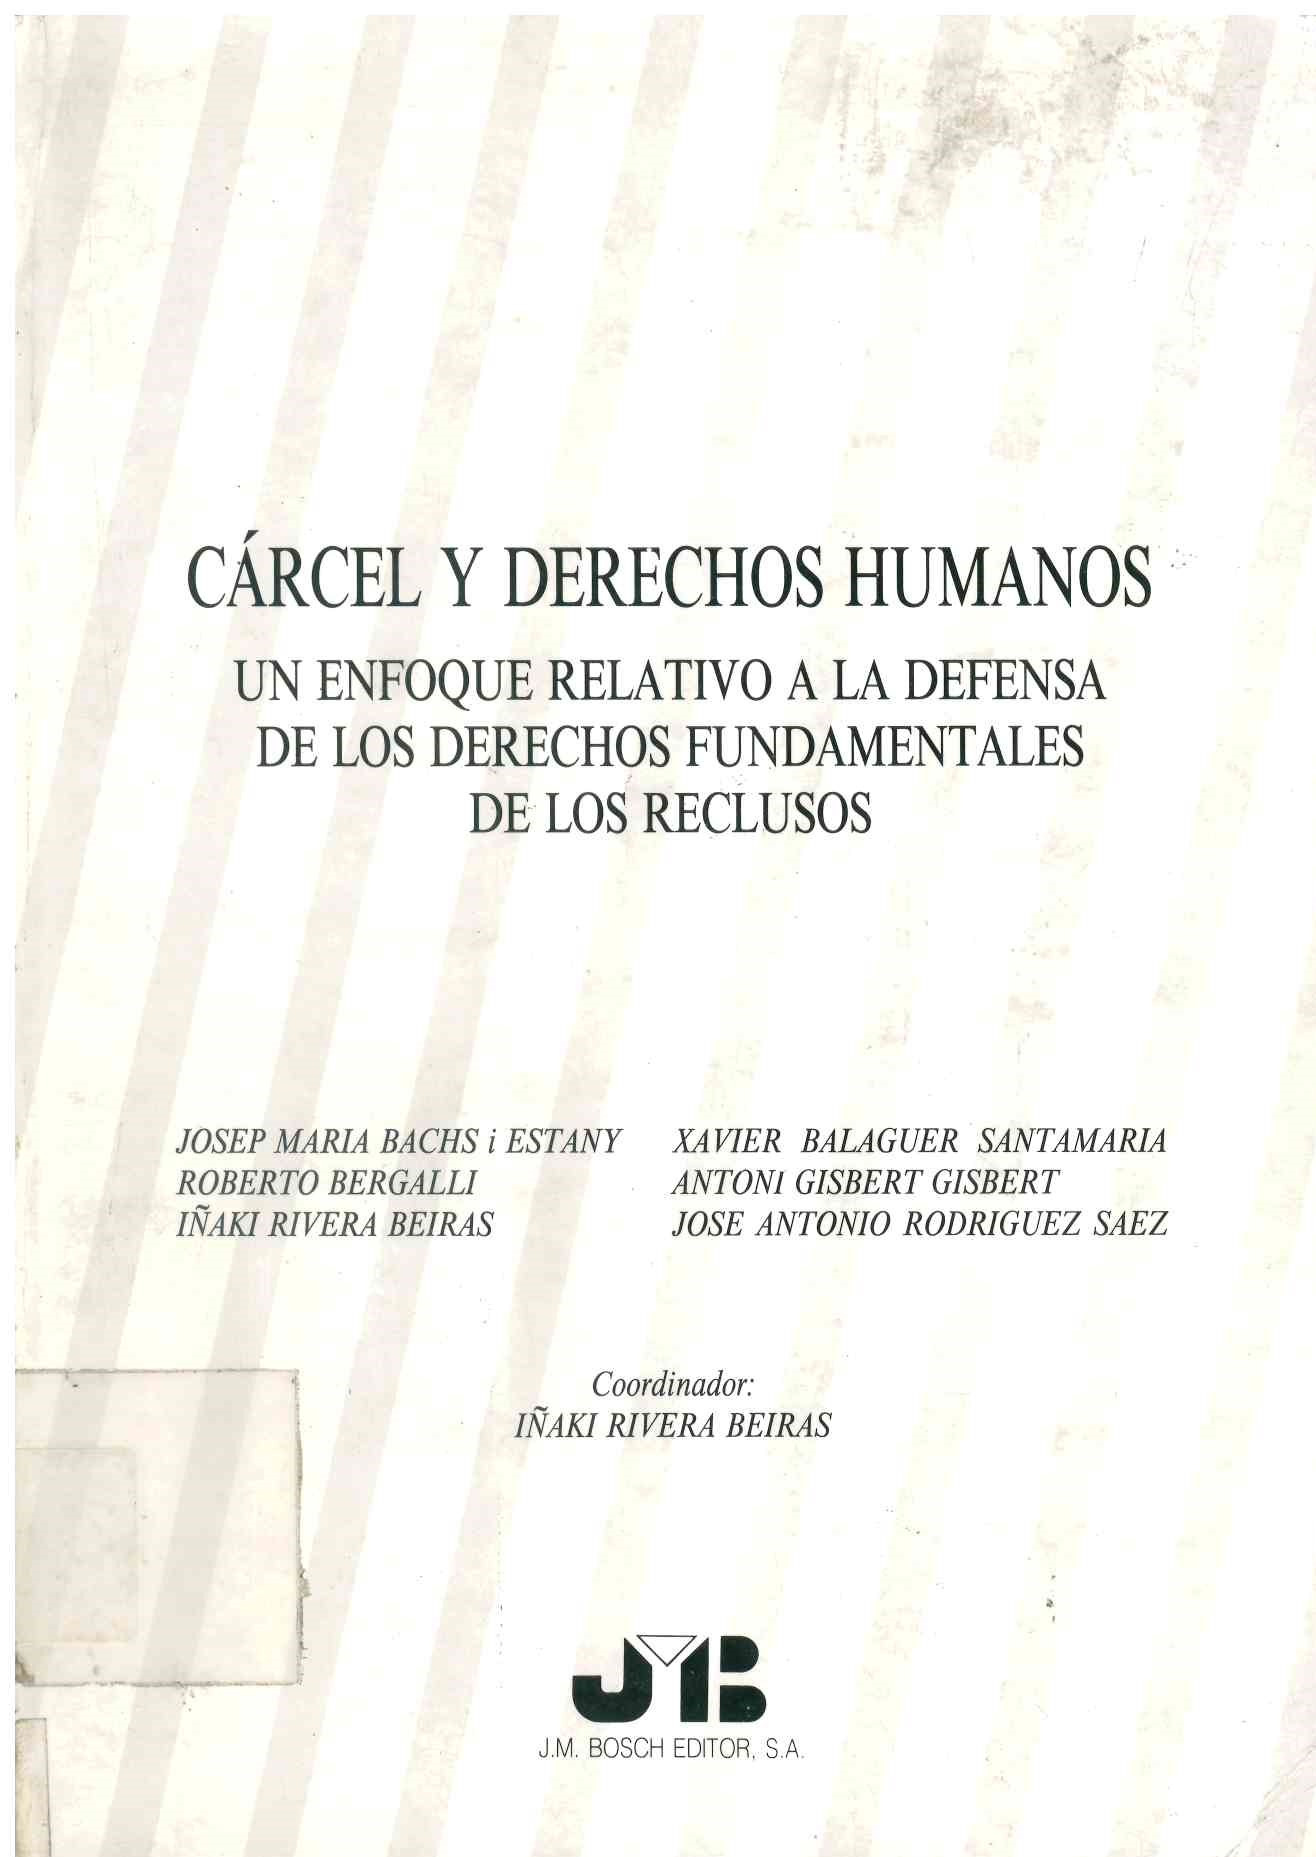 Cárcel y derechos humanos : un enfoque relativo a la defensa de los derechos fundamentales de los reclusos